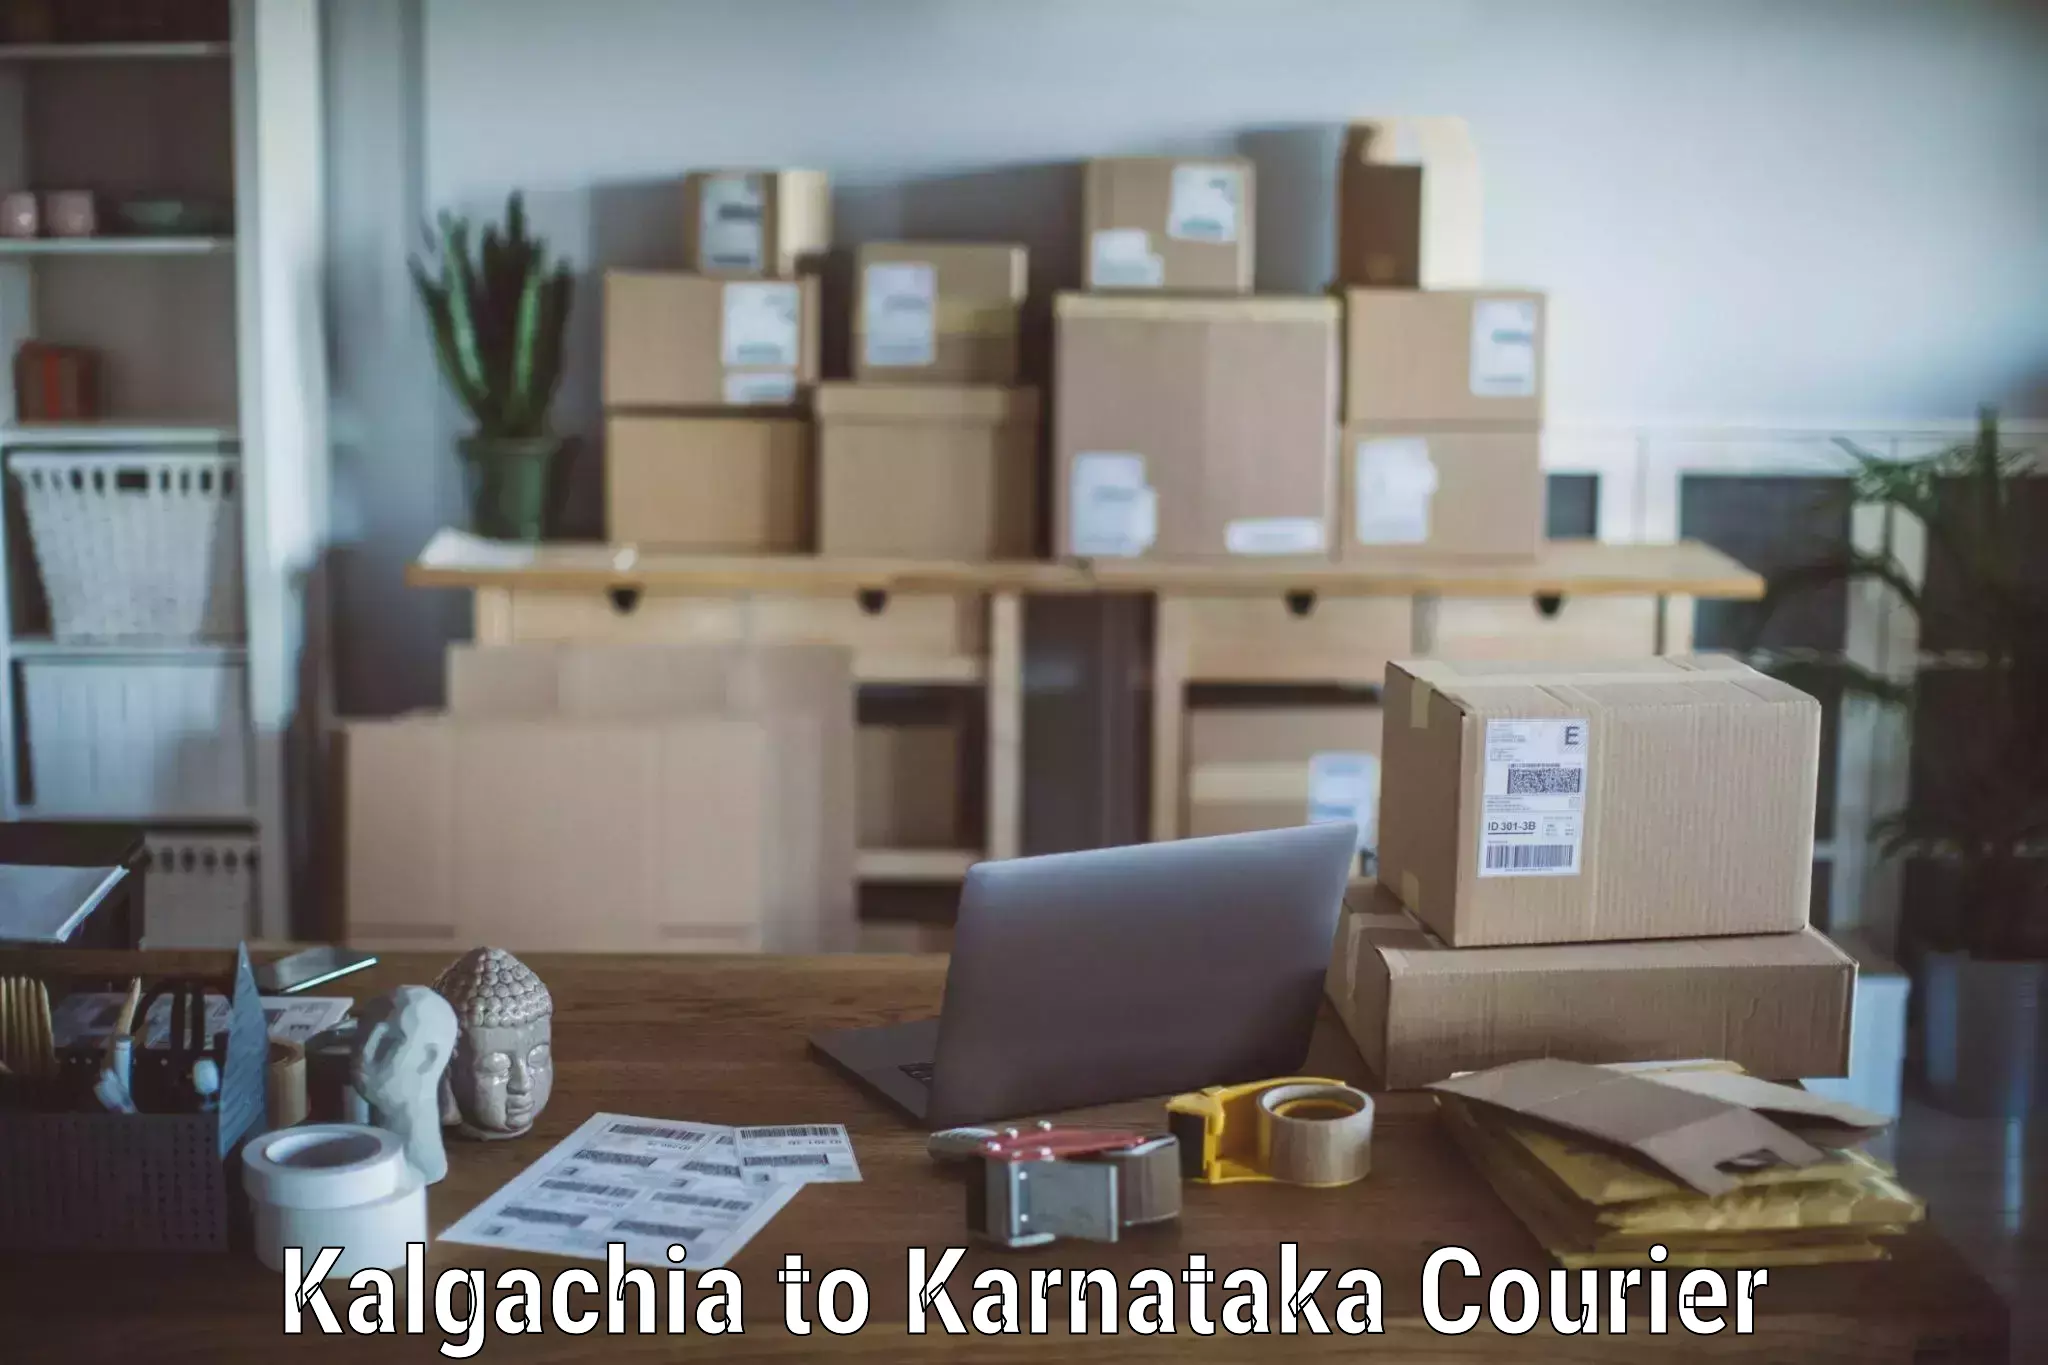 Reliable movers Kalgachia to Karnataka